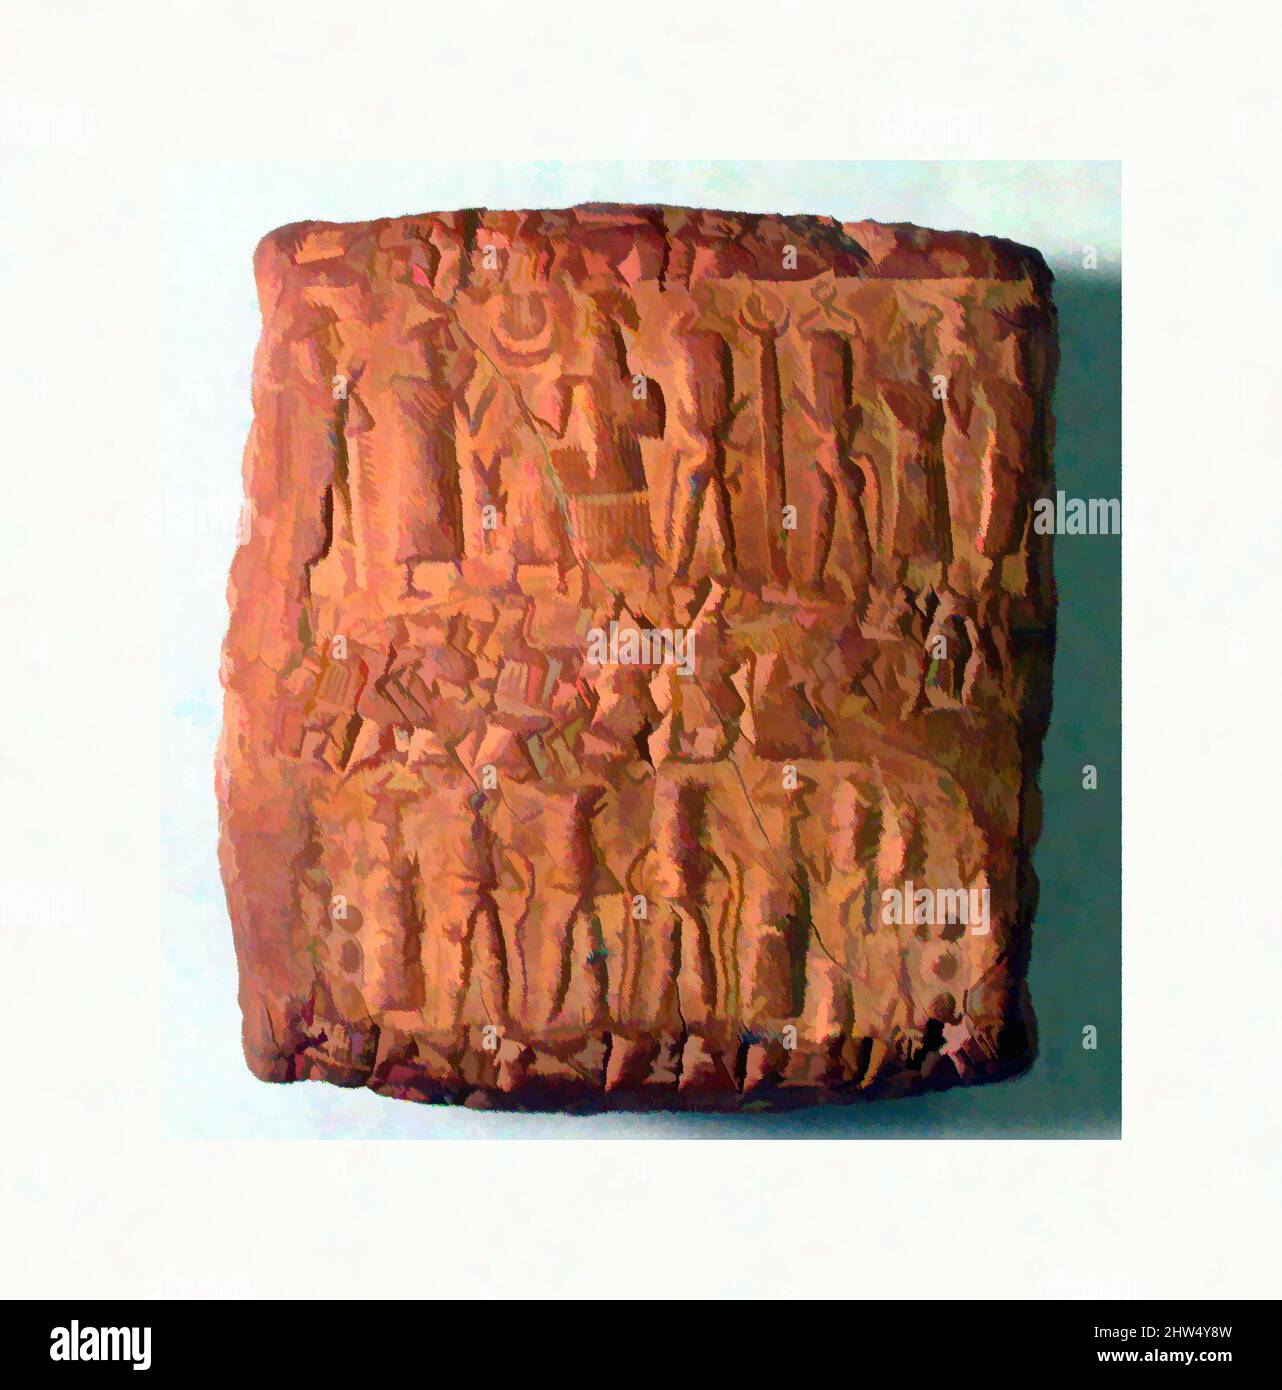 Arte ispirata dalla scatola di tavolette Cuneiform impressionata con tre guarnizioni di cilindro, età del Bronzo Medio-Vecchia colonia di commercio assiro, ca. 20th–19th secolo a.C., Anatolia, probabilmente di Kültepe (Karum Kanesh), Old Assyrian Trading Colony, Clay, 5,7 x 5,2 x 2,8 cm (2 1/4 x 2 x 1 1/8 pollici), Clay-, opere classiche modernizzate da Artotop con un tuffo di modernità. Forme, colore e valore, impatto visivo accattivante sulle emozioni artistiche attraverso la libertà delle opere d'arte in modo contemporaneo. Un messaggio senza tempo che persegue una nuova direzione selvaggiamente creativa. Artisti che si rivolgono al supporto digitale e creano l'NFT Artotop Foto Stock